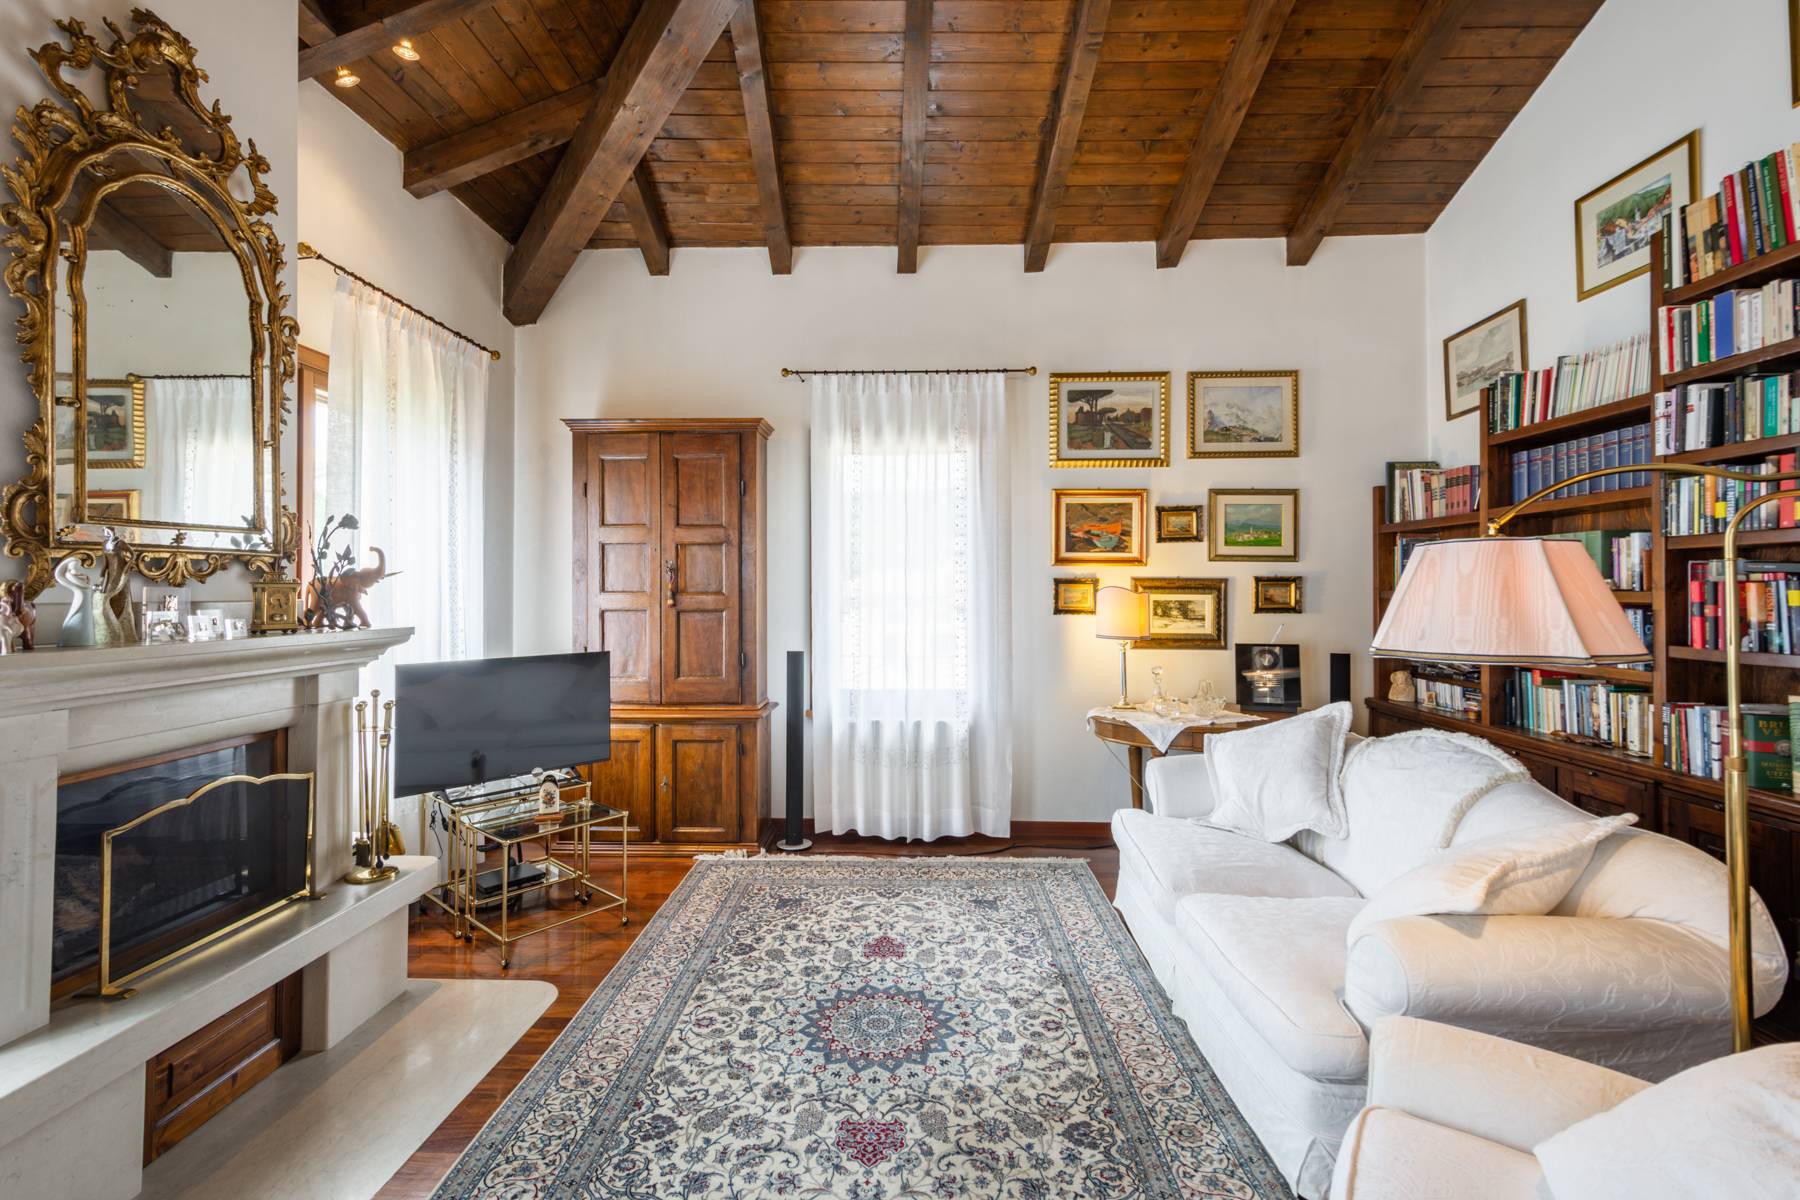 Splendido attico in Villa  a pochi minuti dal centro storico di Verona - 1